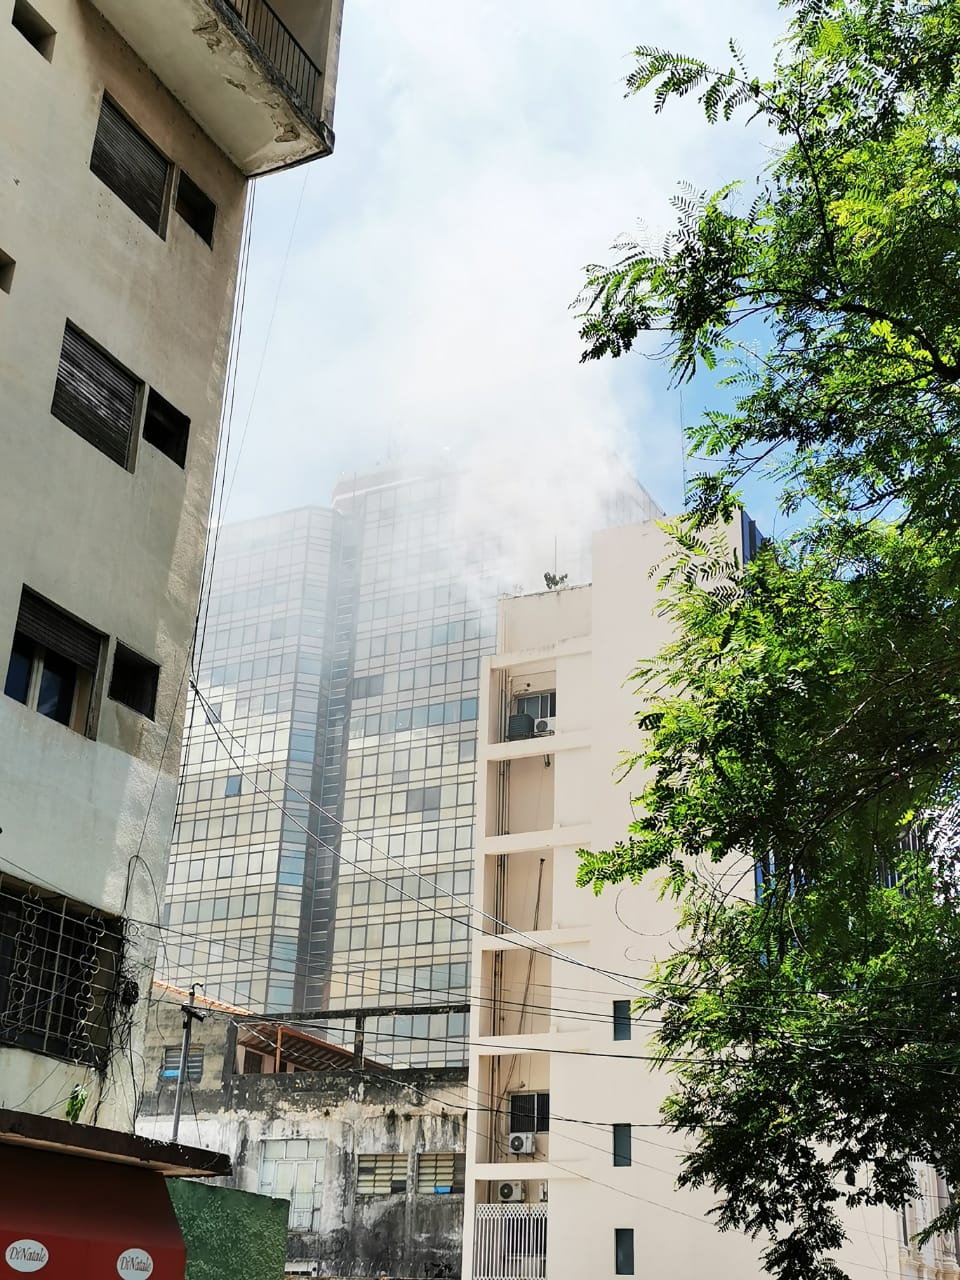 Logran controlar incendio en la sede de la Vicepresidencia. Foto: @BomberosK3